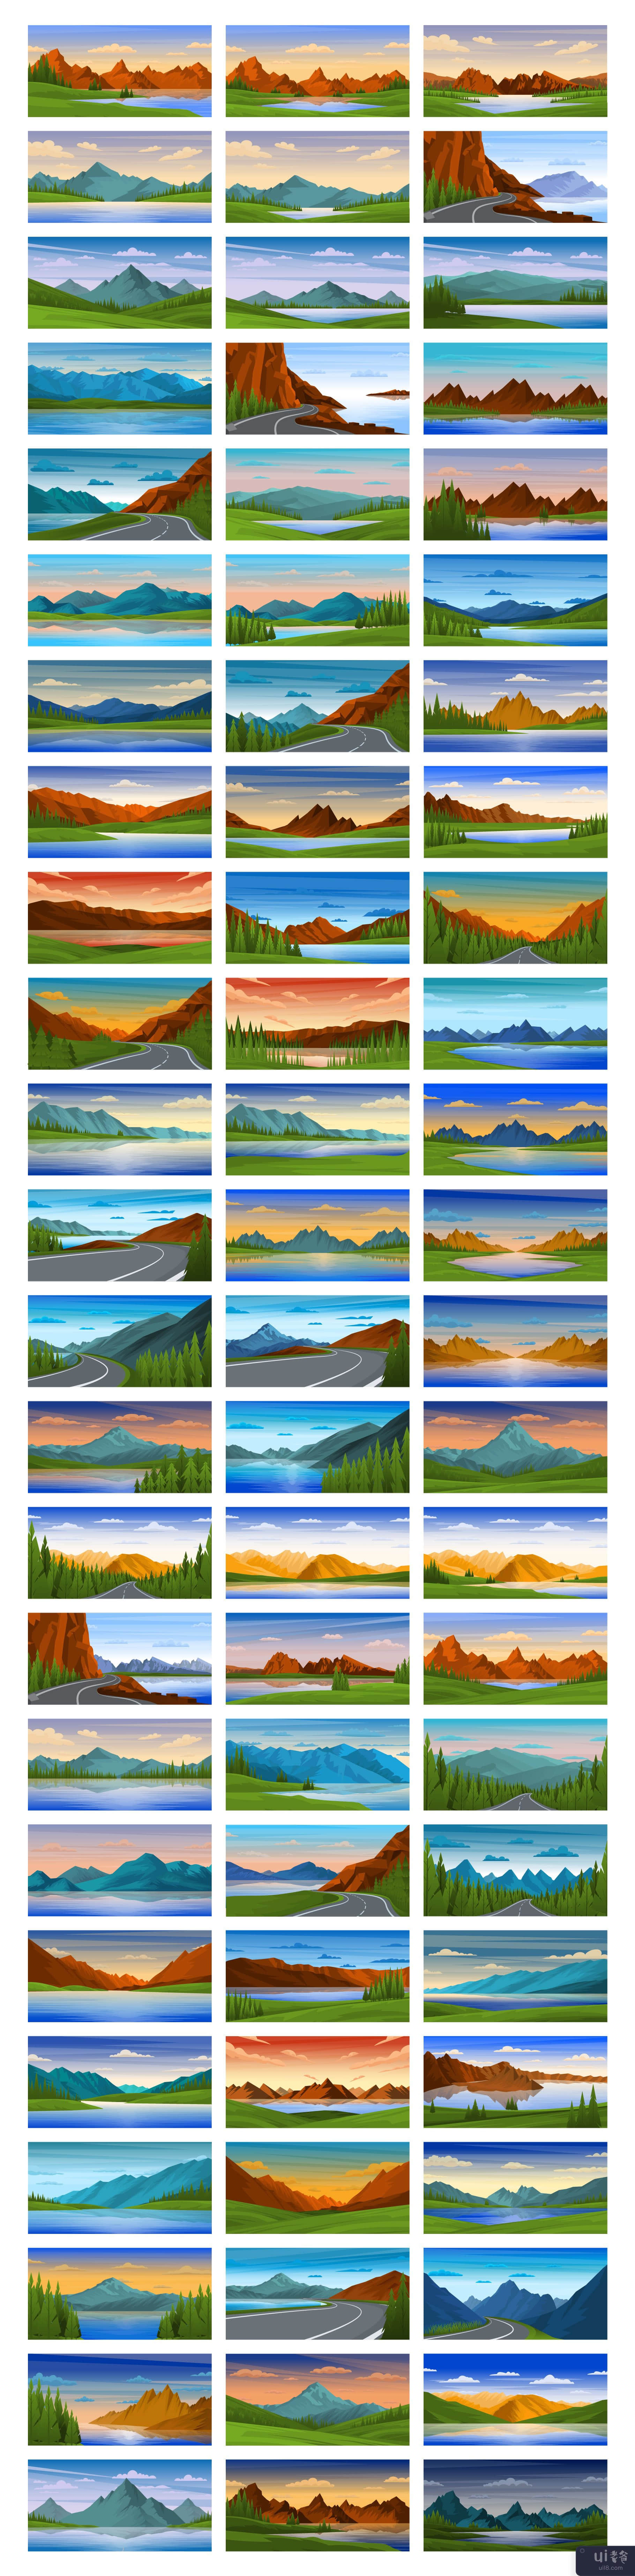 250个美丽的山背景(250 Beautiful Mountain Backgrounds)插图9